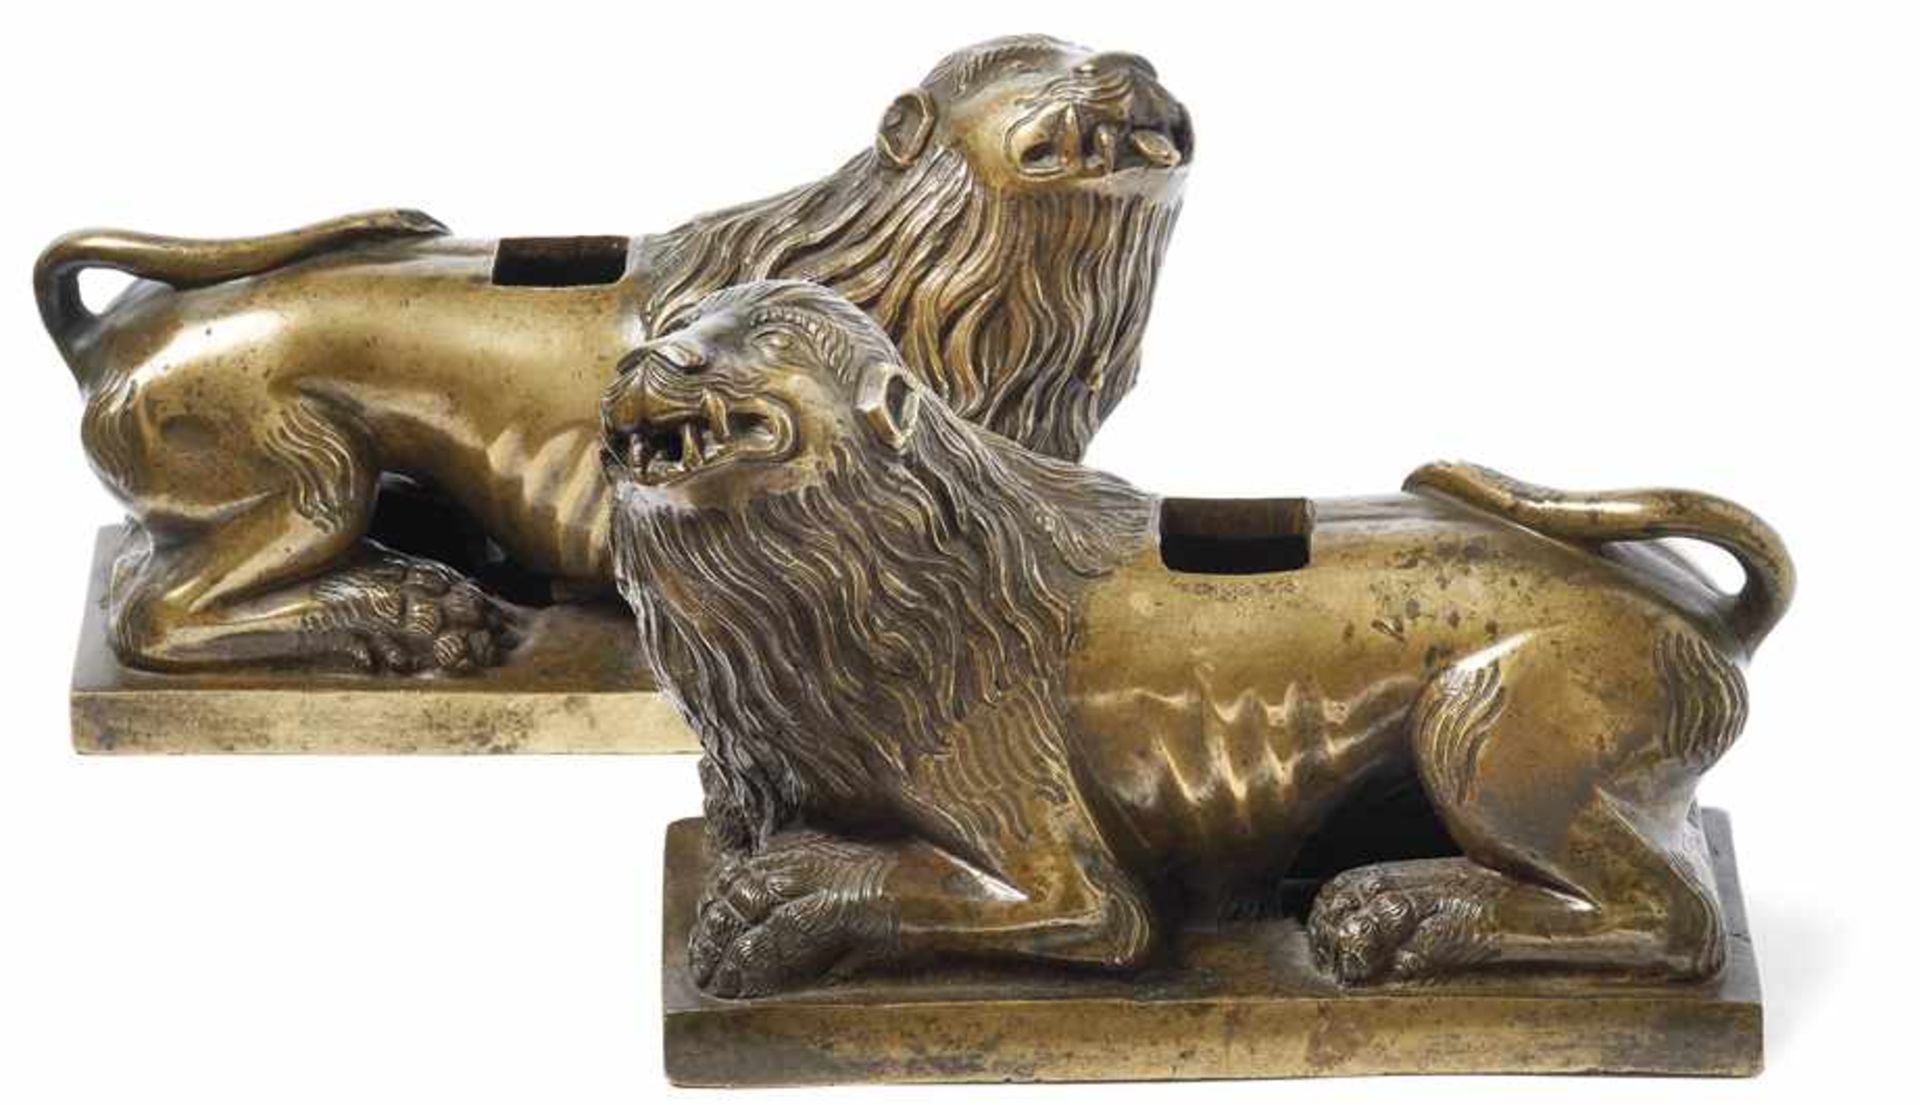 Seltenes Paar LöwenVenedig, um 1600Auf Rechtecksockel liegend, den Kopf erhoben und die Zunge